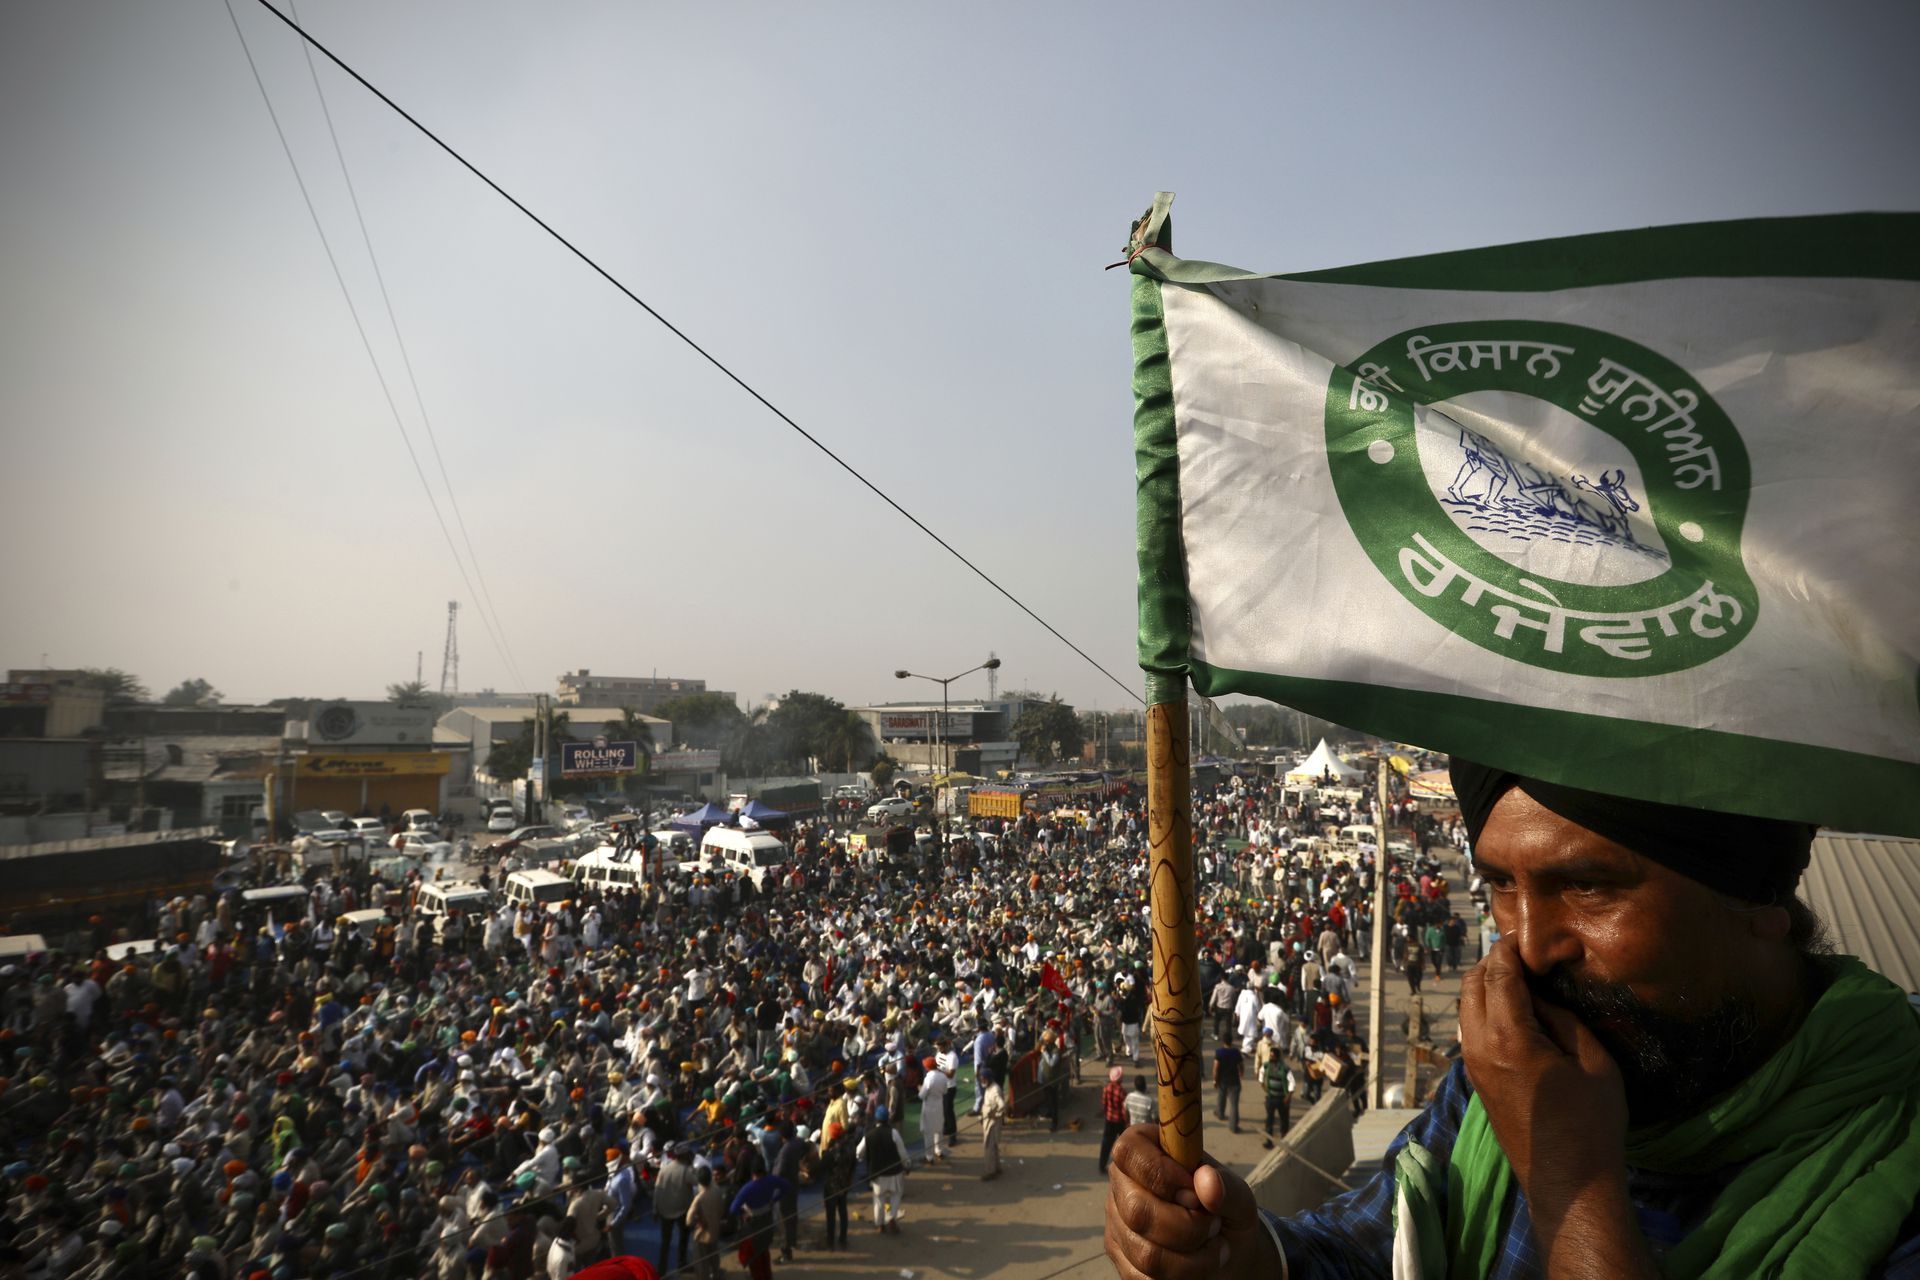 图为一名打着“全印度农民联盟”旗帜的农民，该组织在全印11个邦有分支，以无党派农民代表组织著称，但其在行动中还是与左翼党派共进退。（美联社）